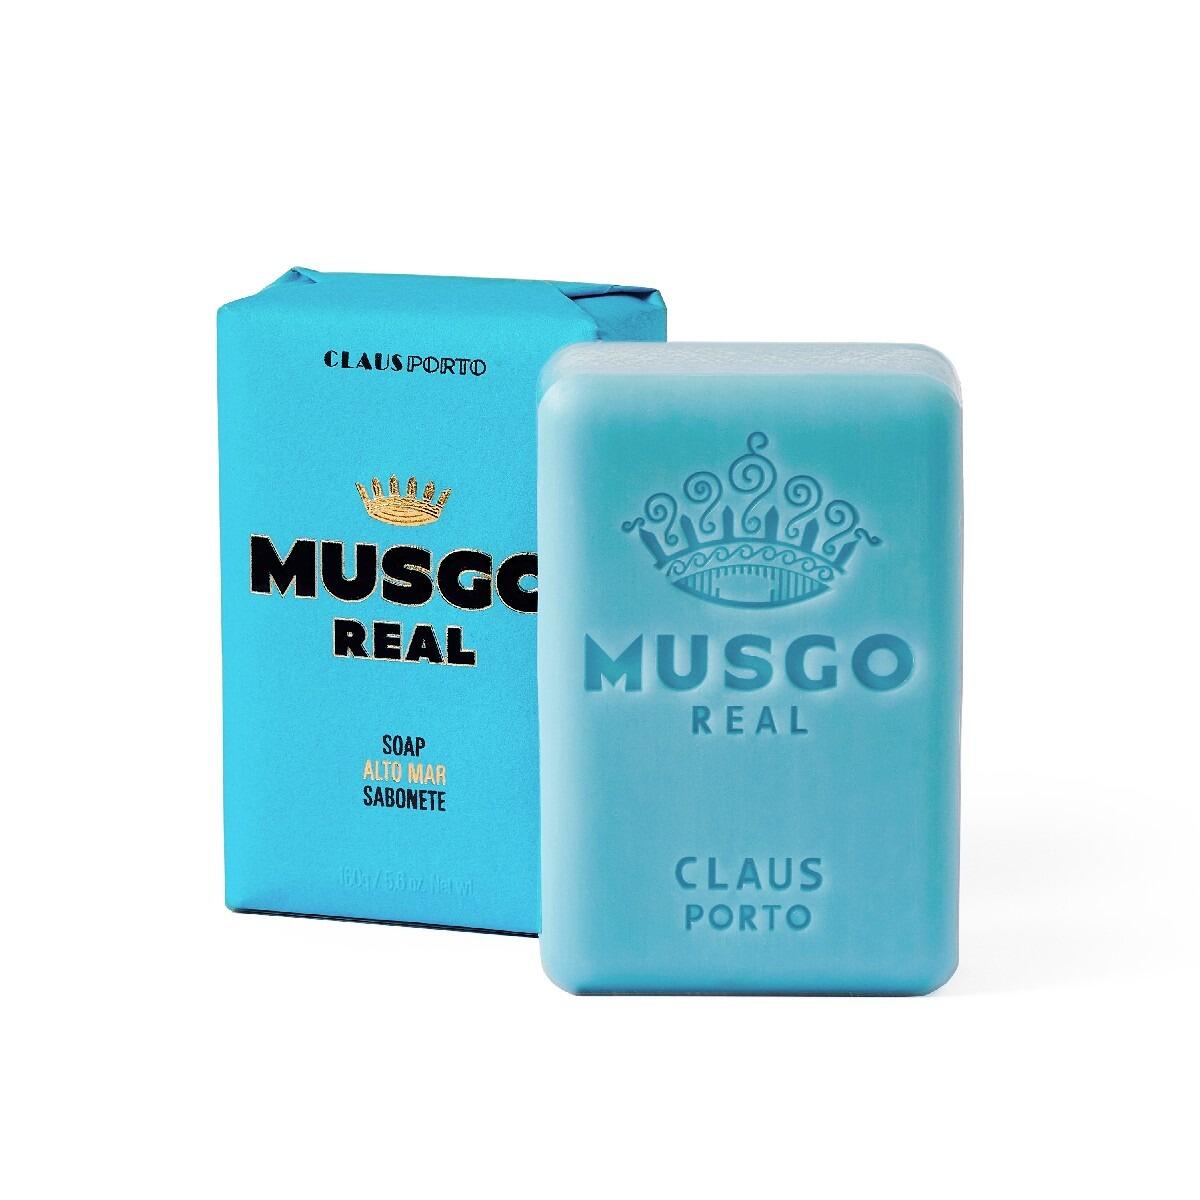 Musgo Real Eau de Cologne, Classic Scent